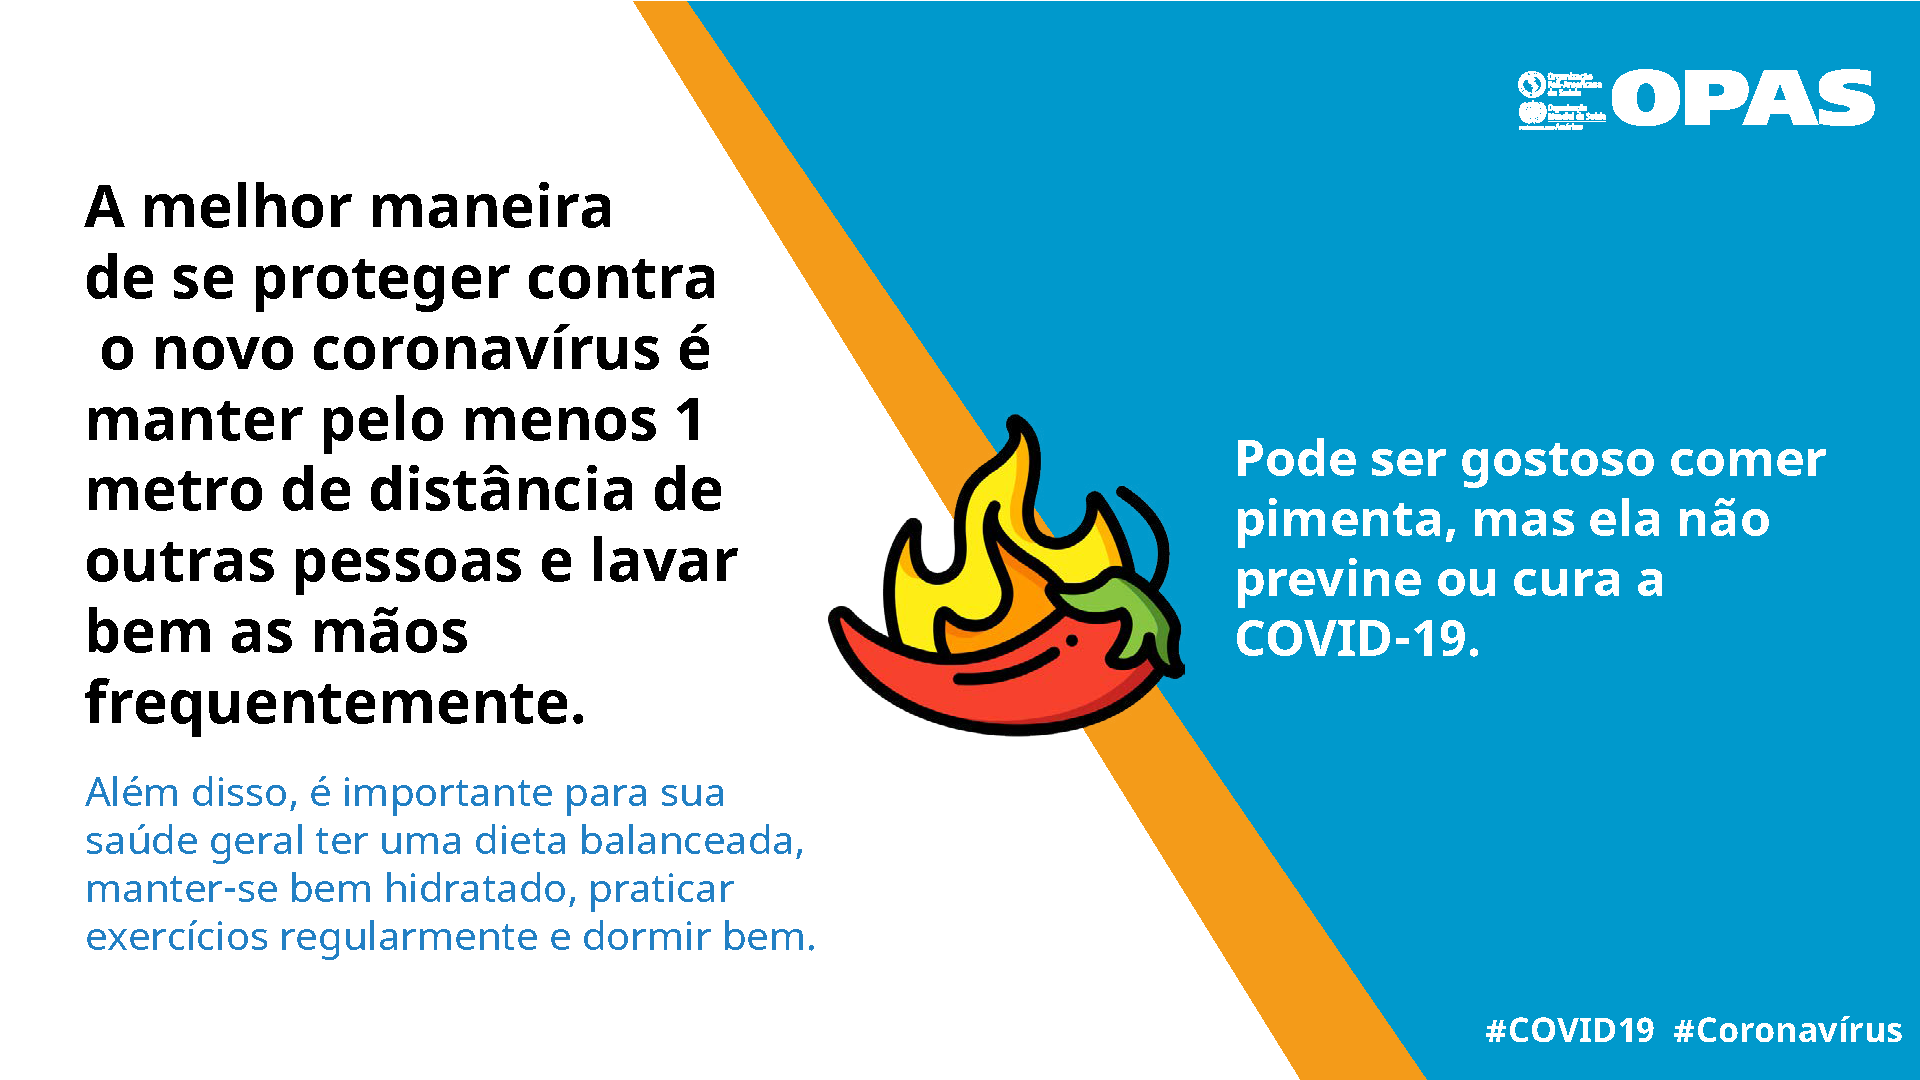 Pode ser gostoso comer pimenta, mas ela não previne ou cura a COVID-19.